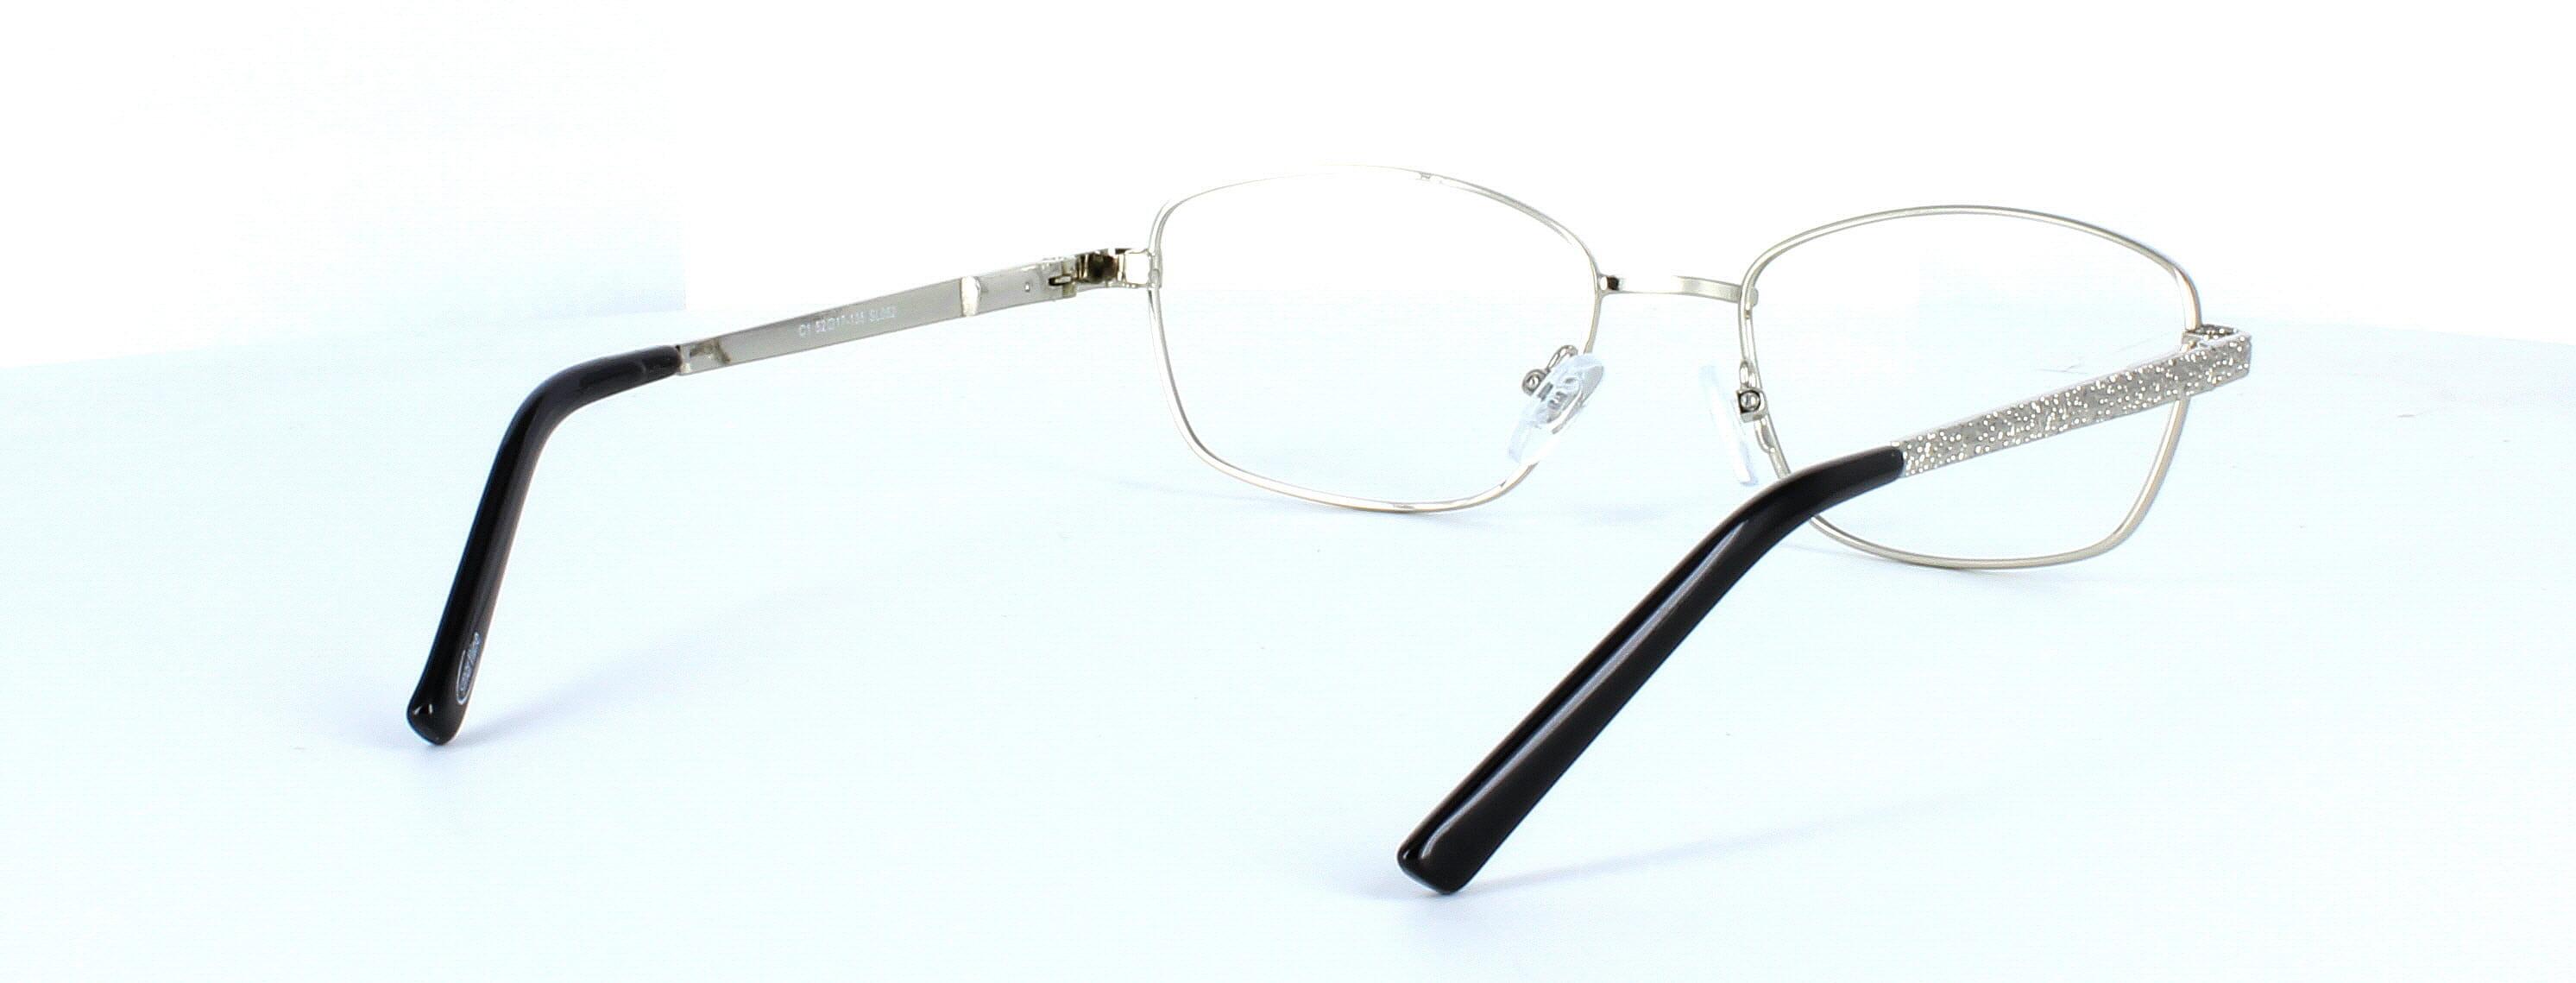 Sophia - Ladies silver metal glasses frame - image view 4